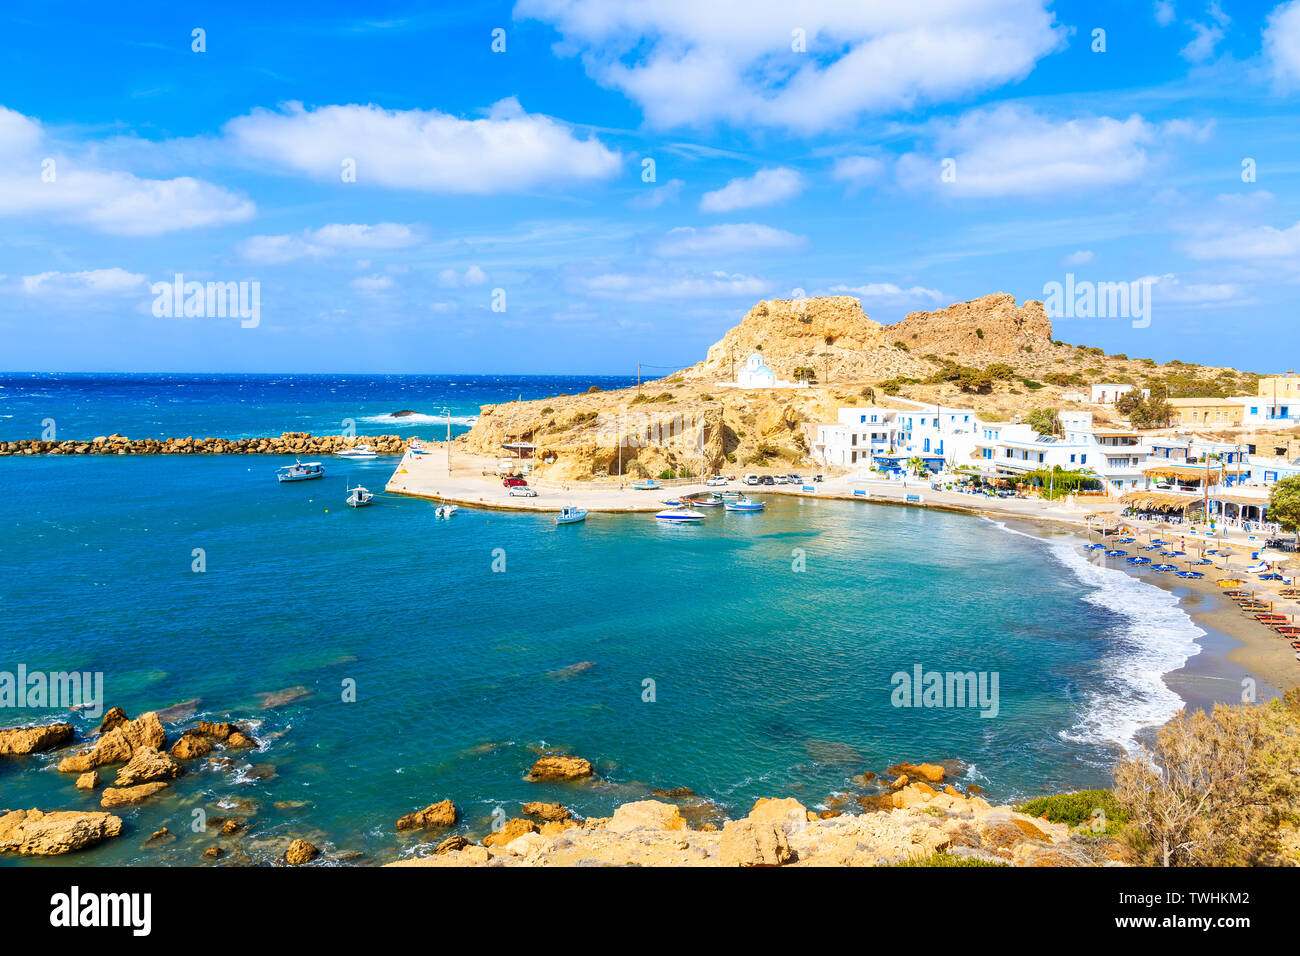 Vue sur le port et la plage de Finiki sur la côte de la mer de l'île de Karpathos, Grèce Banque D'Images